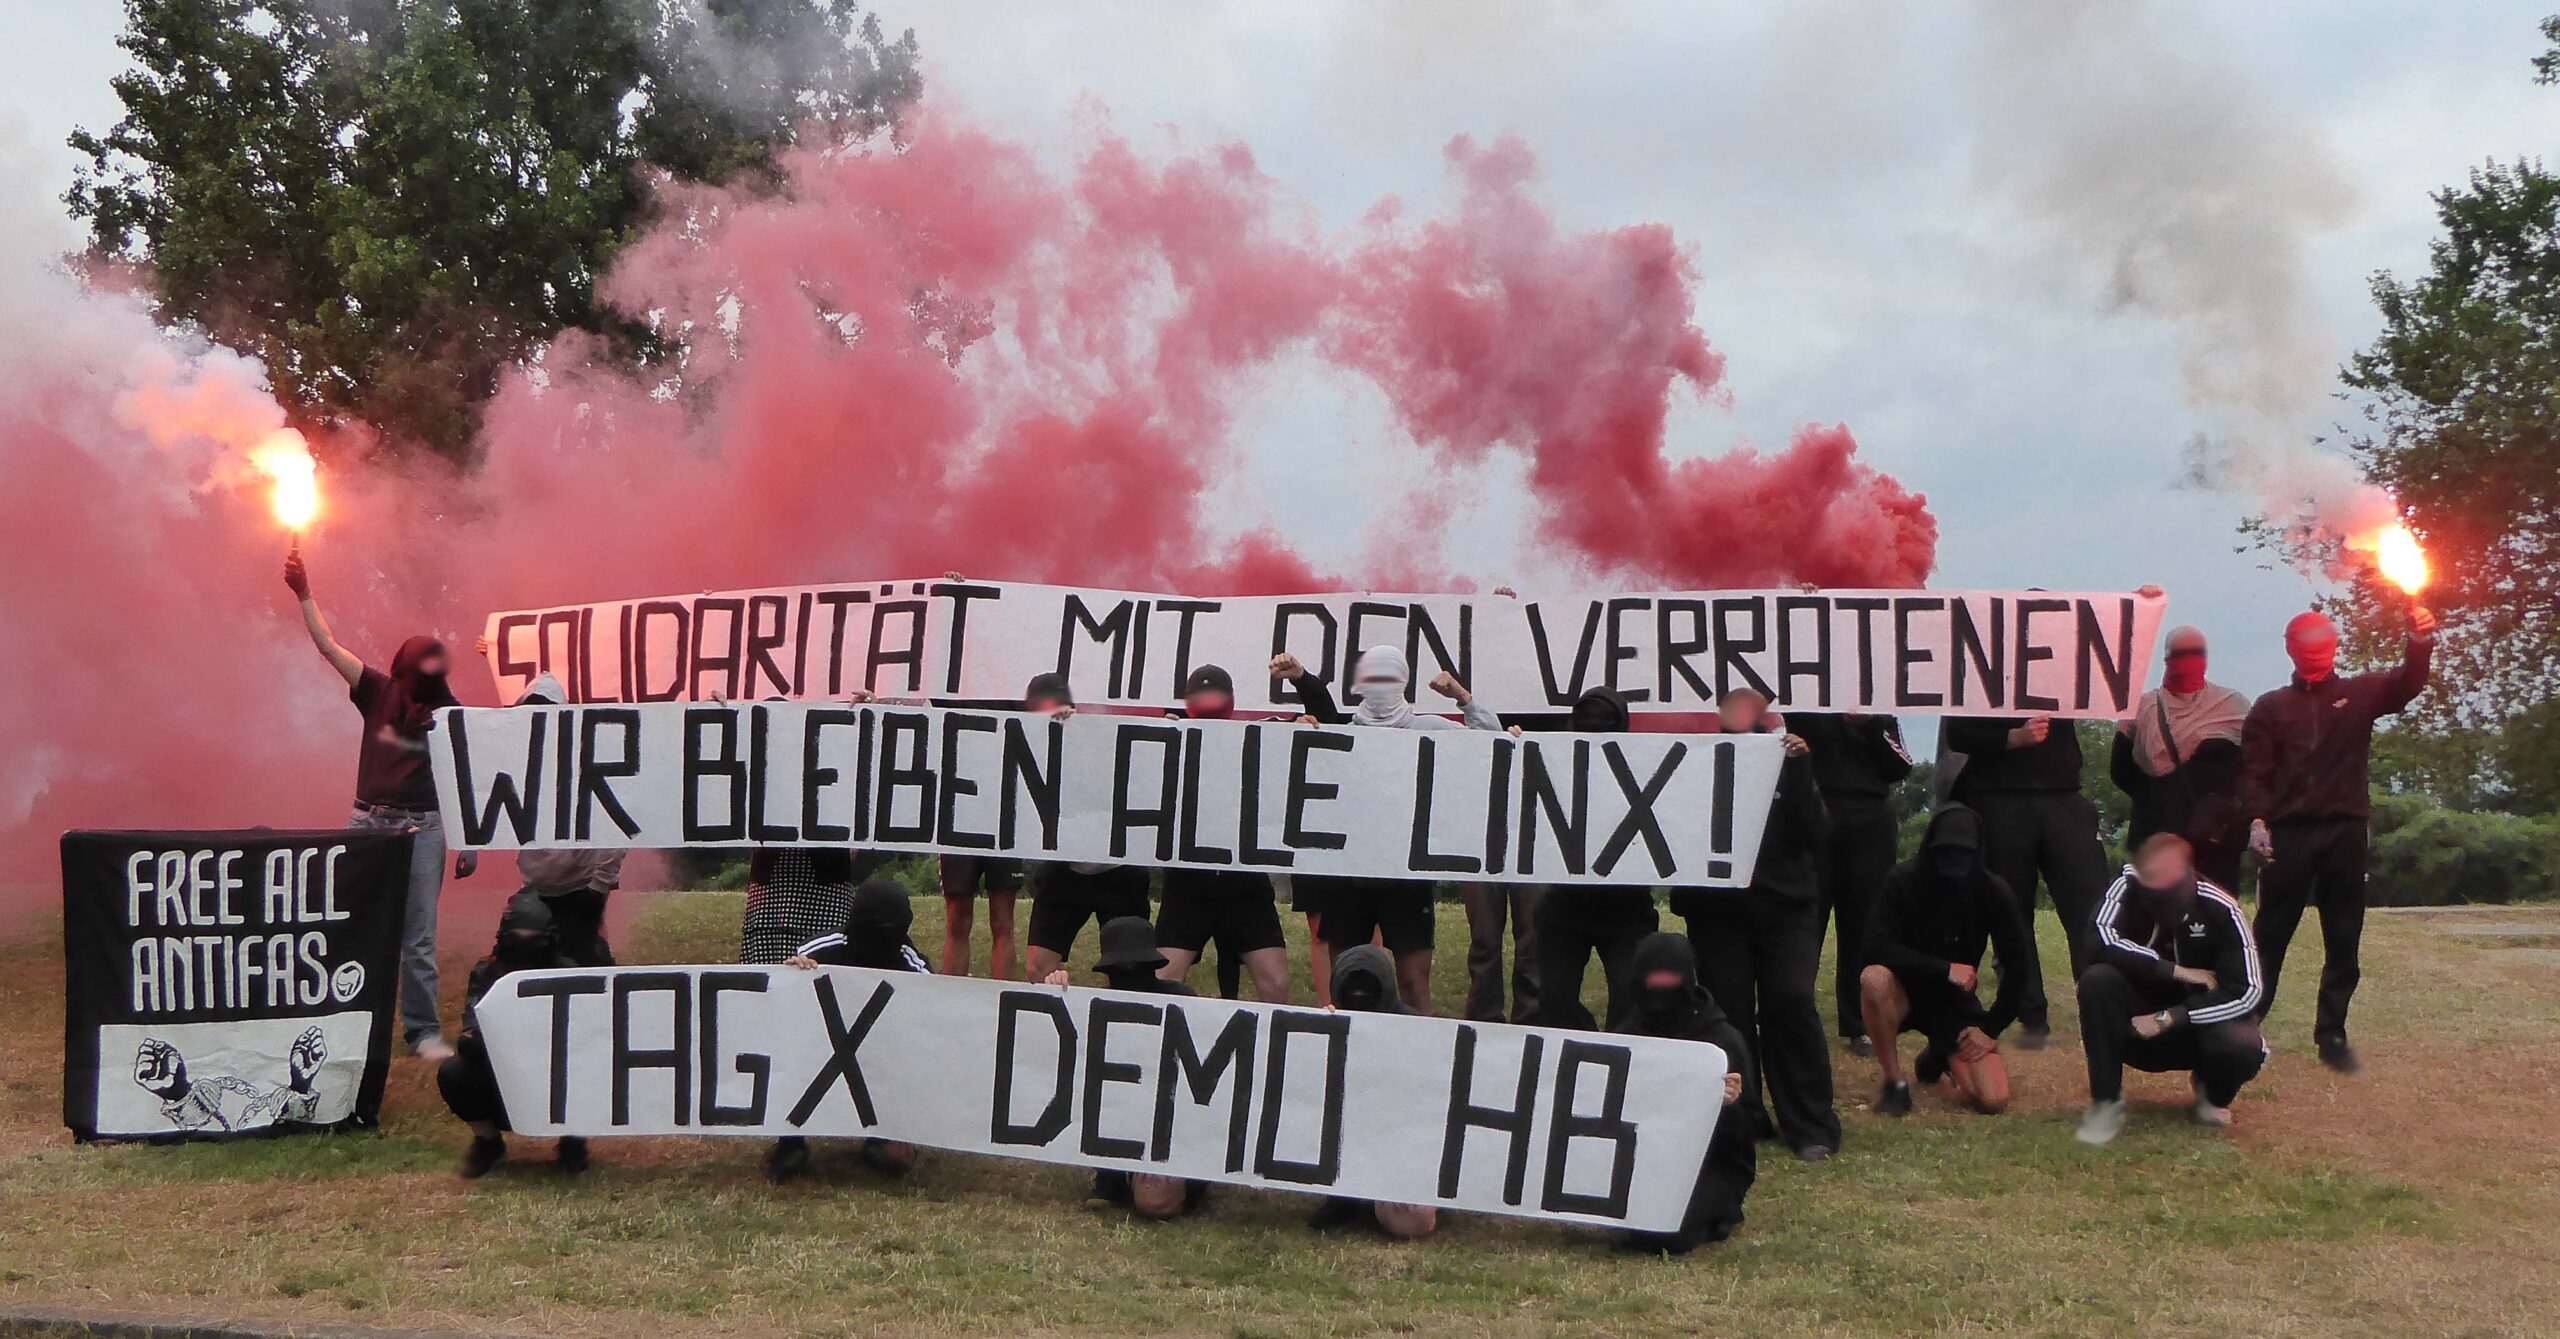 You are currently viewing Bremen: Solidarität mit den Verratenen! Wir bleiben alle linx!